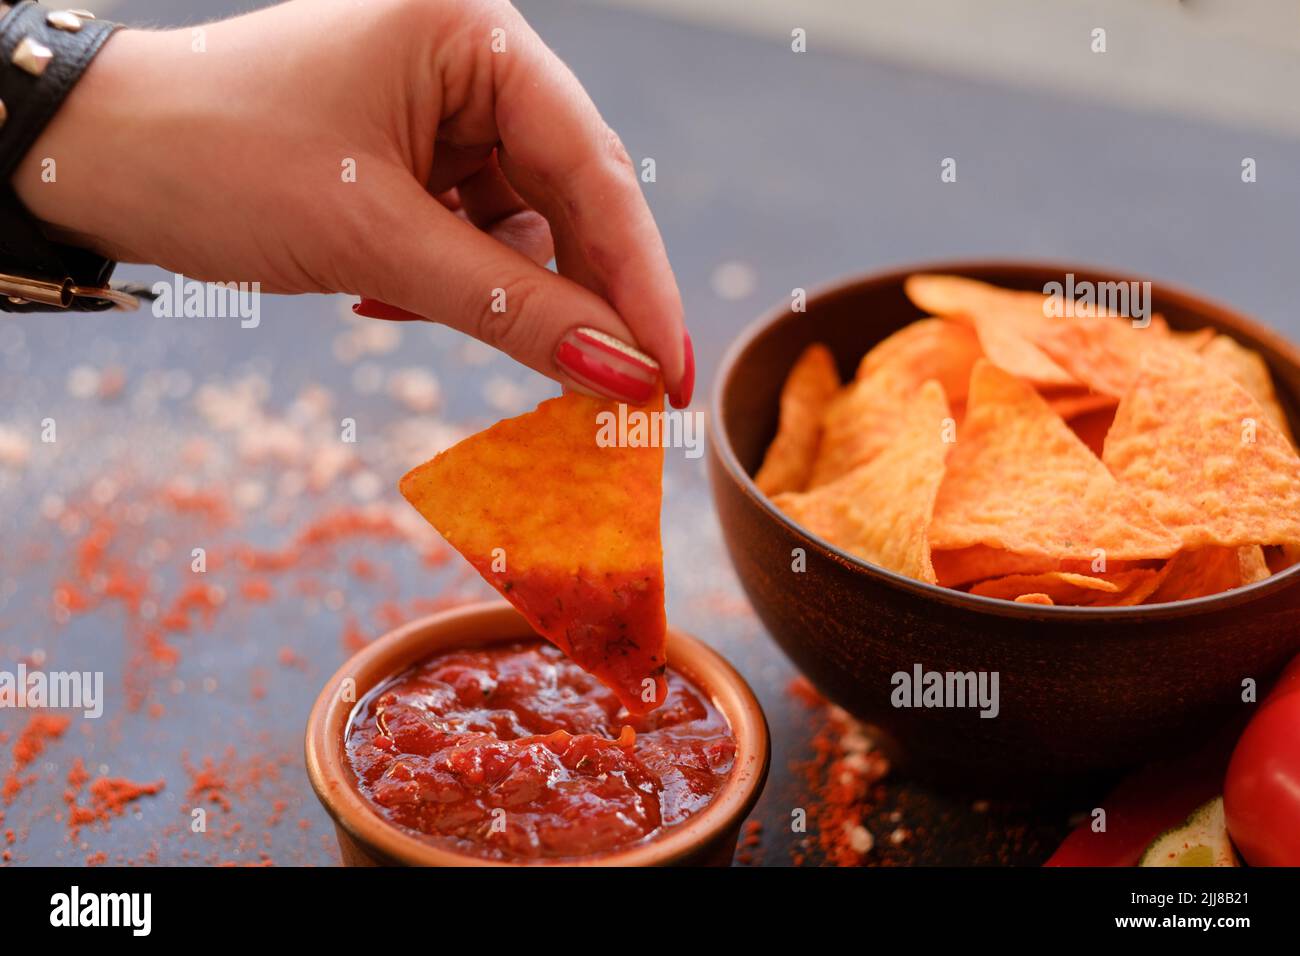 spazzatura fast food mangiare nacho chips salsa di pomodoro tuffo Foto Stock